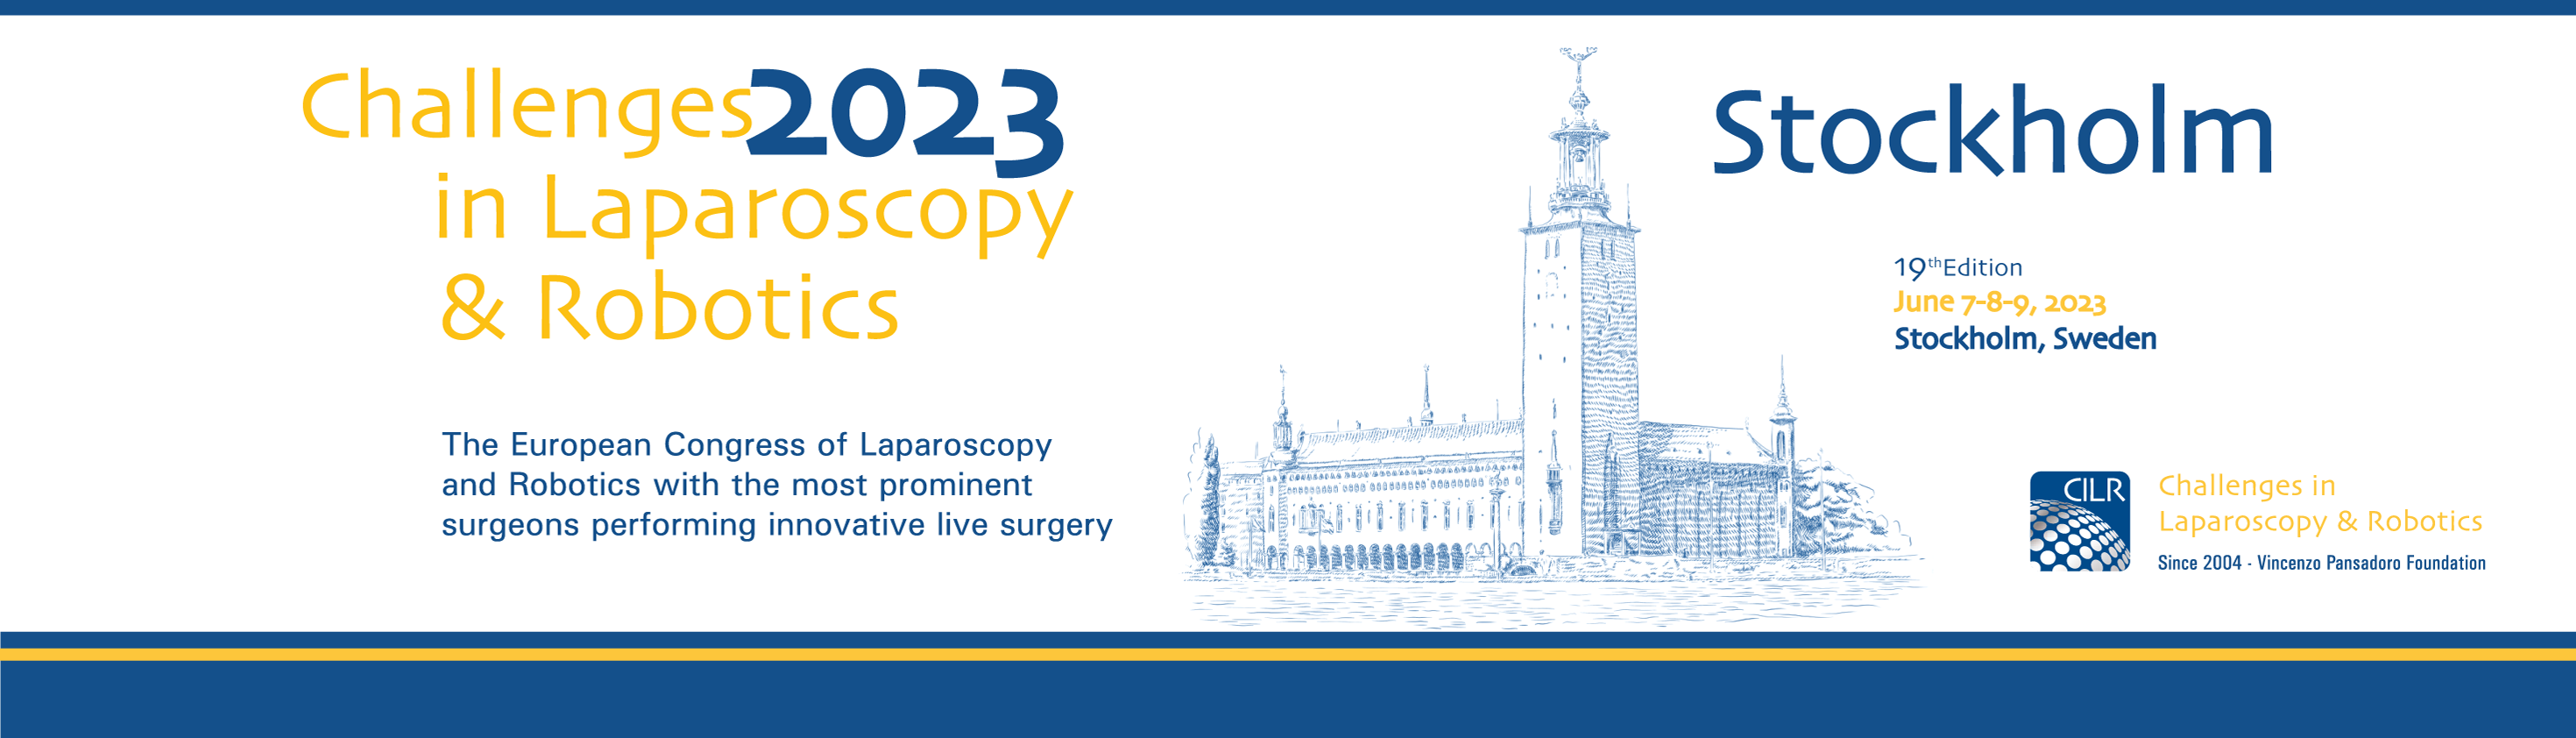 Challenges in laparoscopy